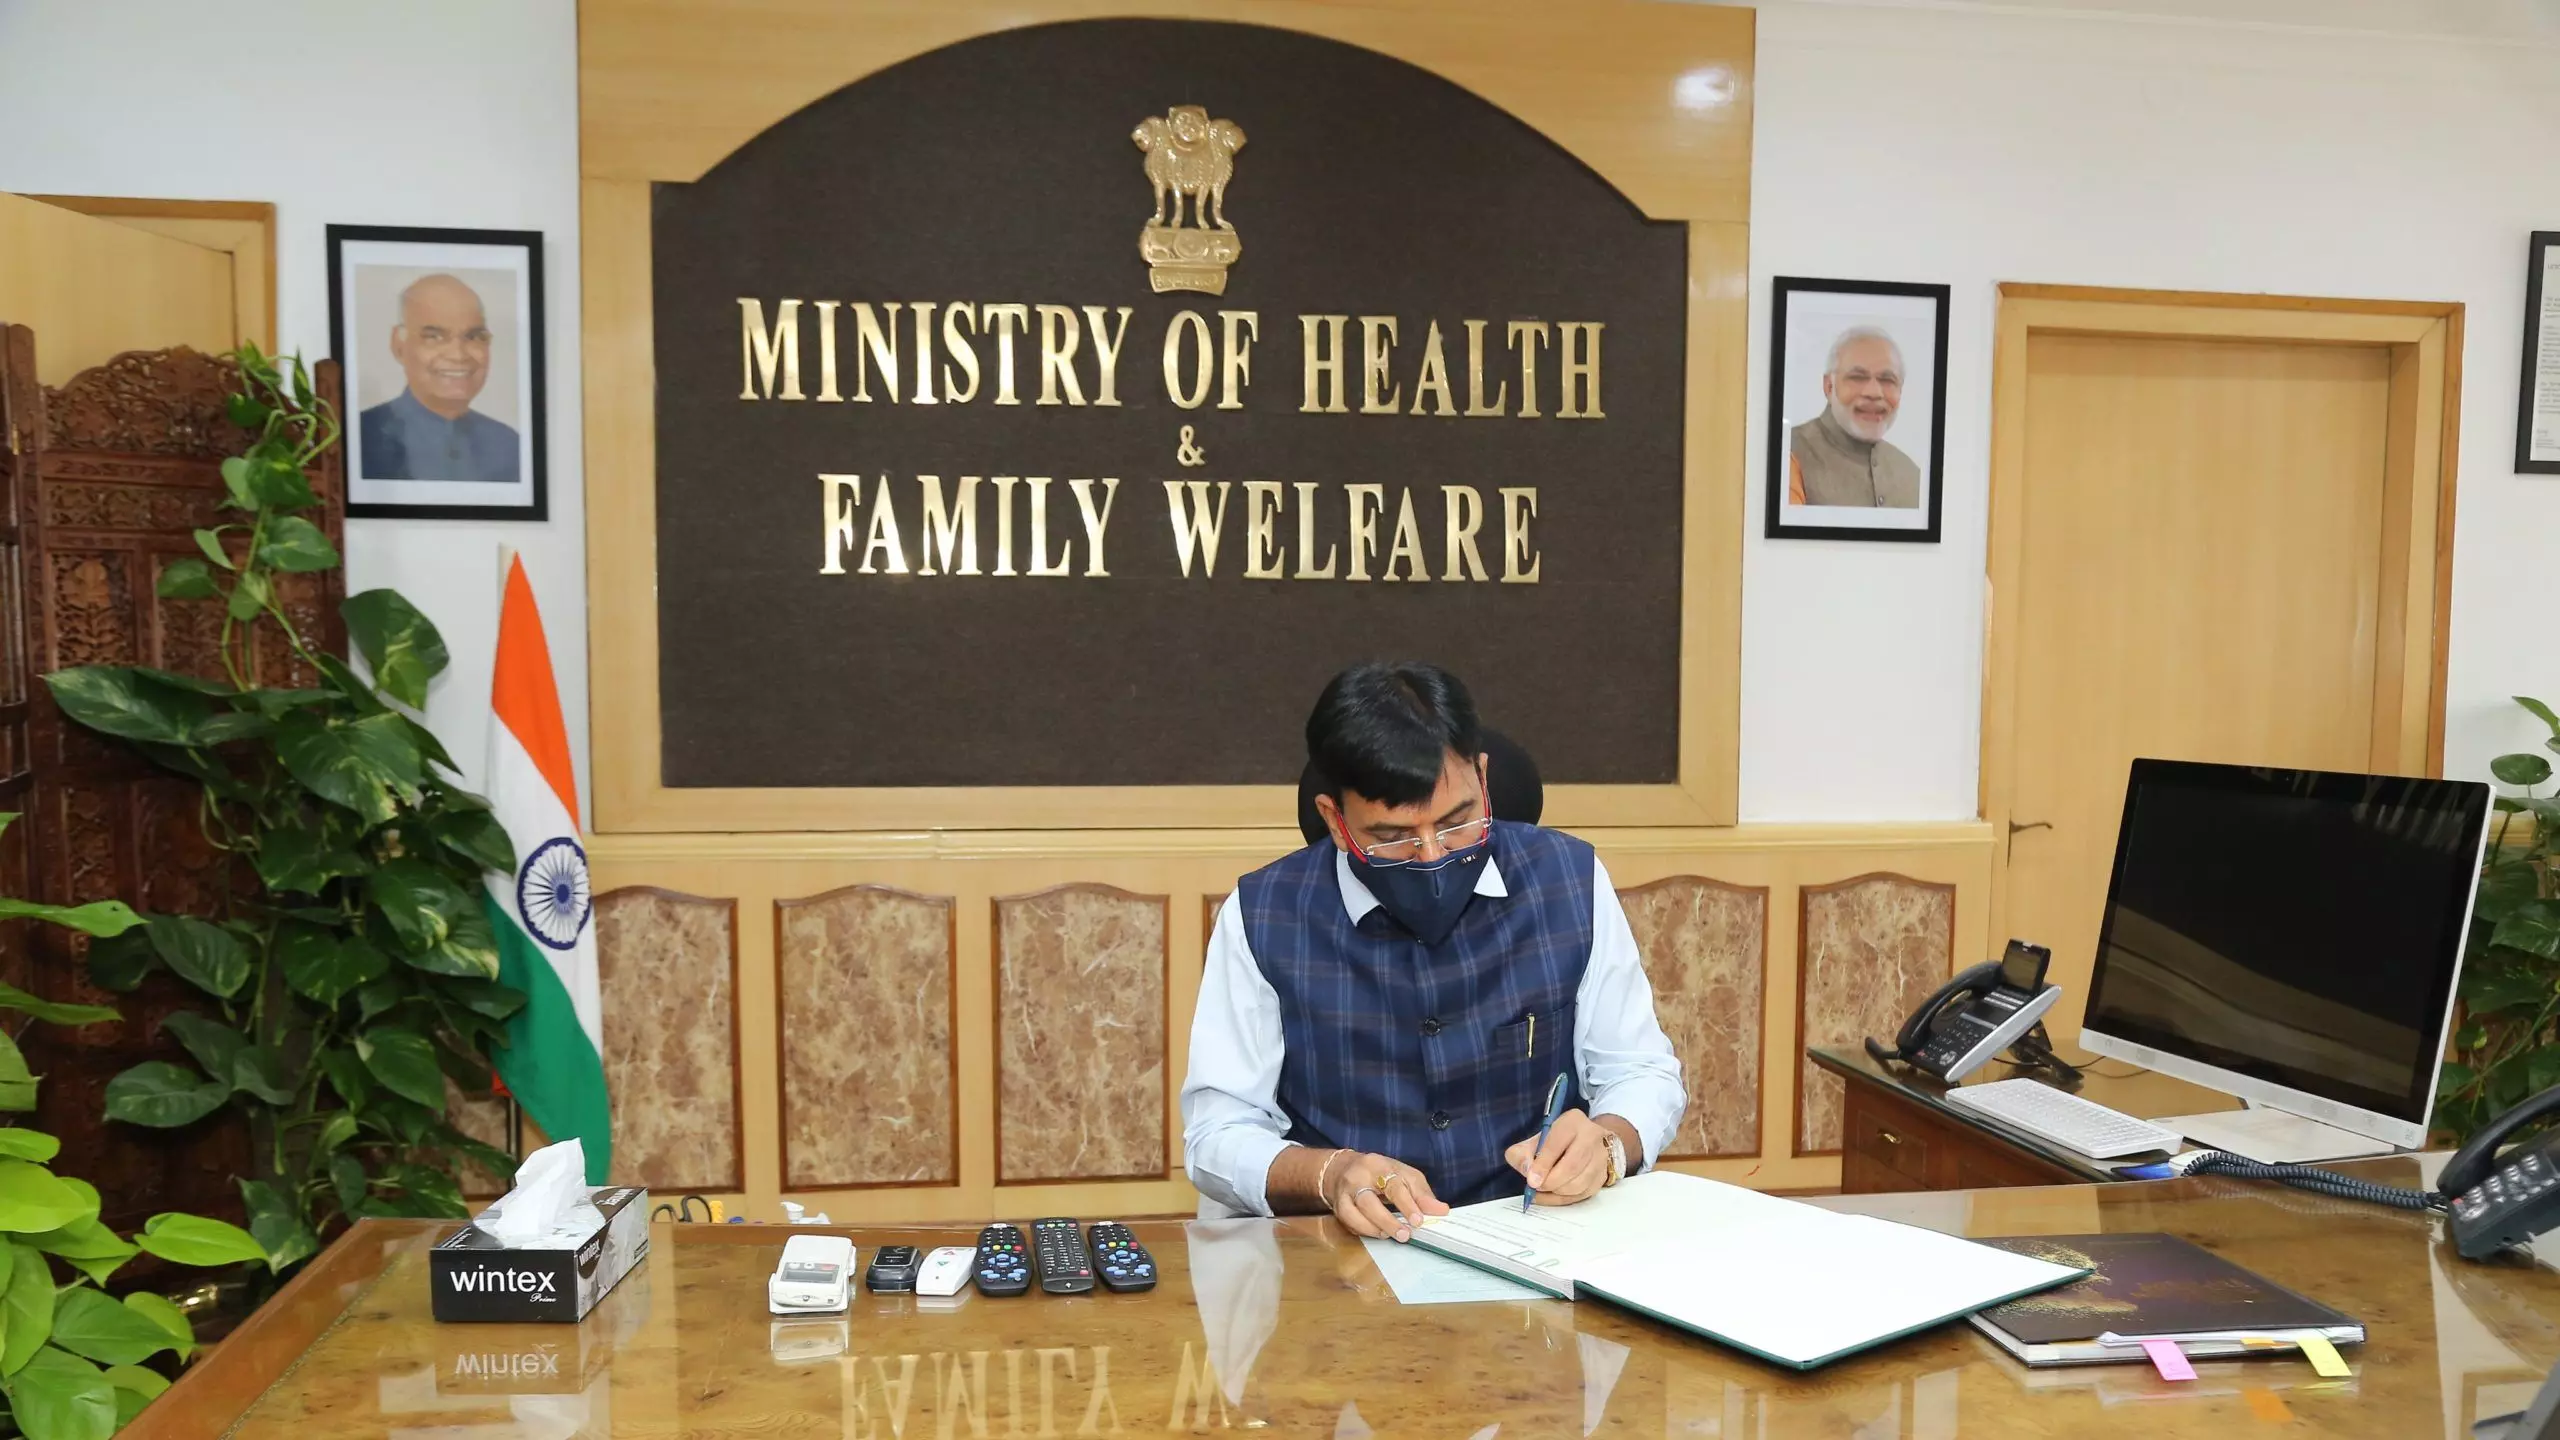 केंद्रीय स्वास्थ्य मंत्री मनसुख मंडाविया ने कोविड-19 वैक्सीन को लेकर अफवाह फैलाने वालों को दी आत्मनिरीक्षण की सलाह